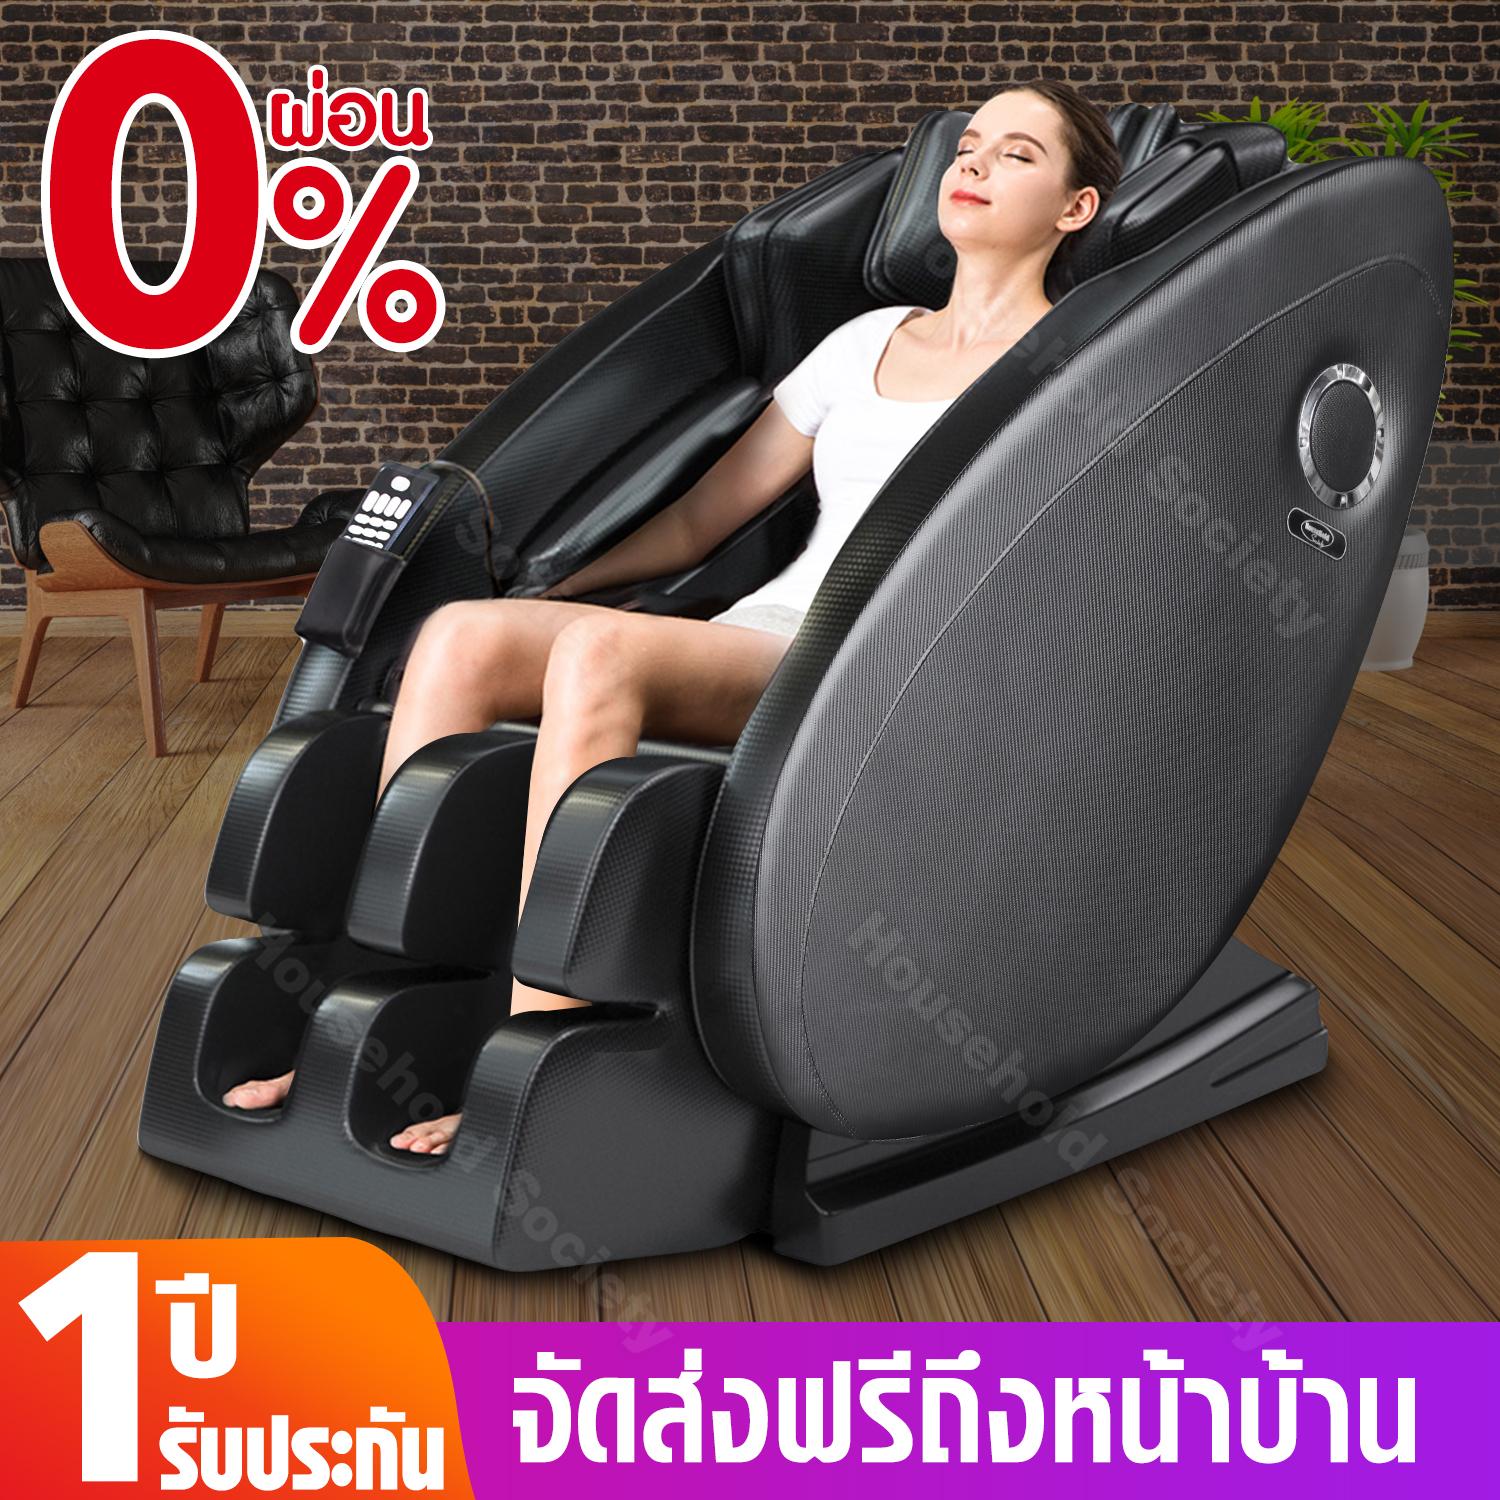 เก้าอี้นวด เก้าอี้นวดไฟฟ้า ทรงแคปซูล Zero Gravity Massage Chair เก้าอี้นวด รุ่น HH-806